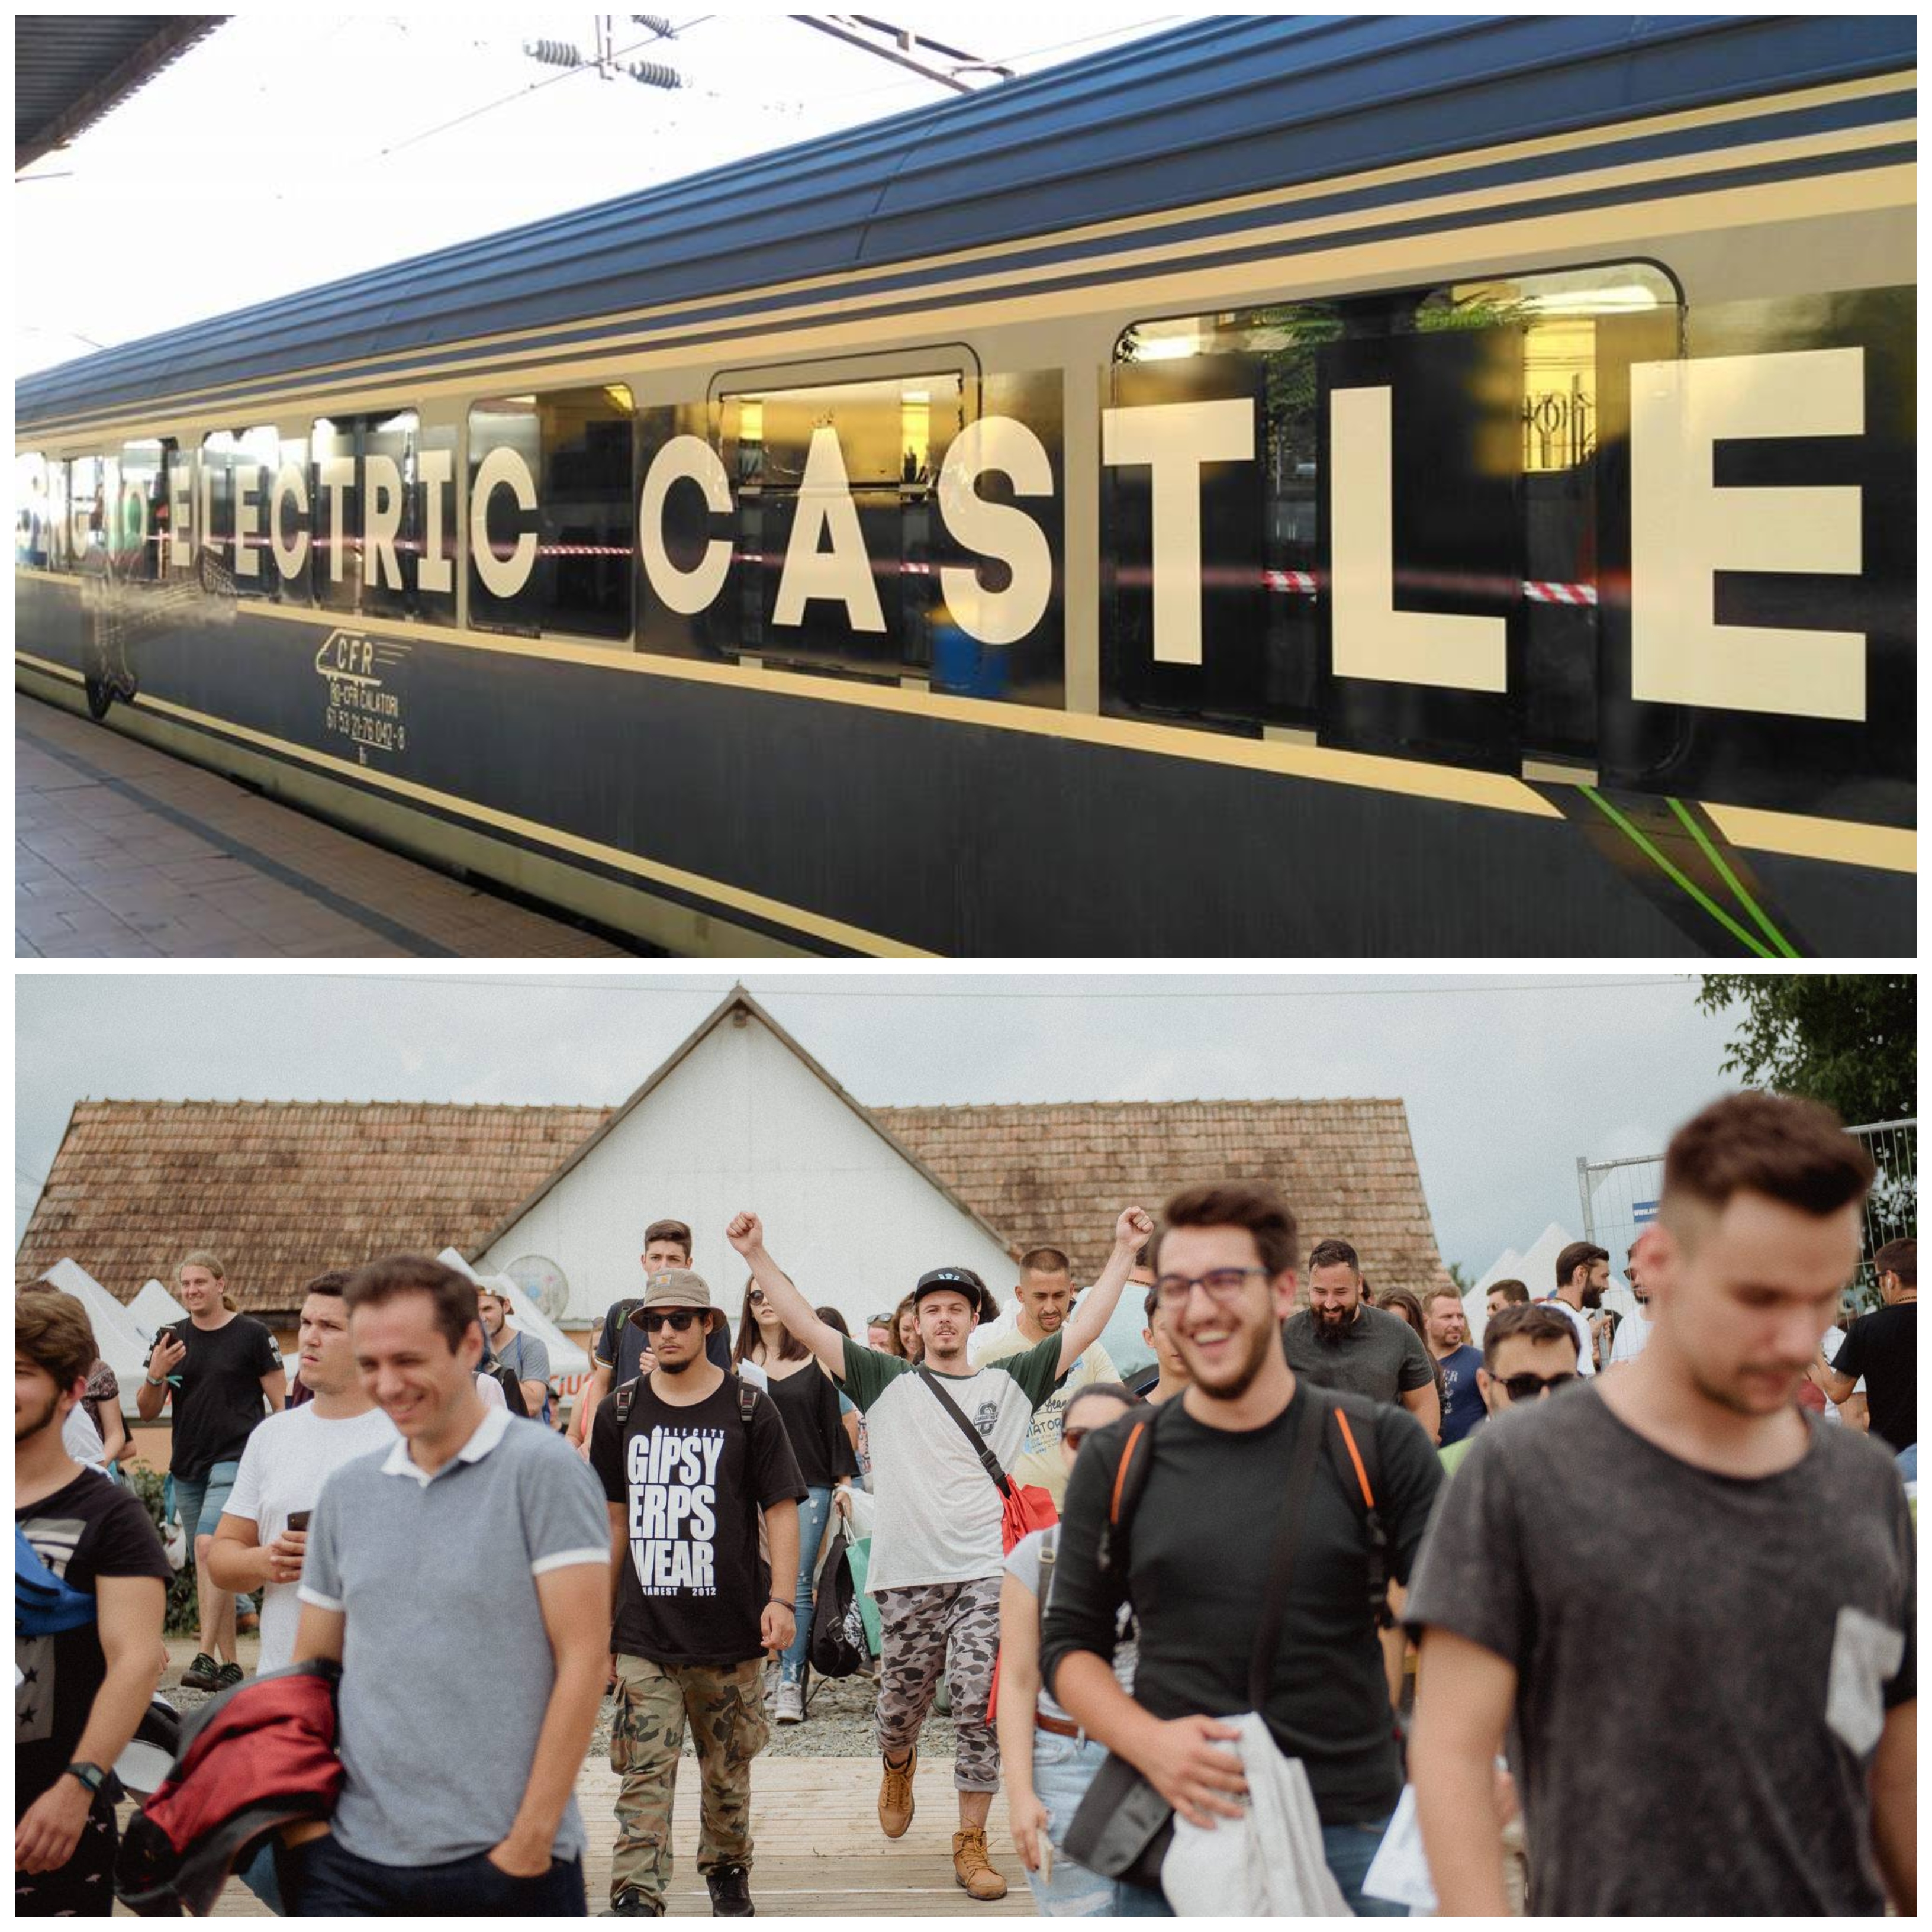 Când și cu ce să mergi la Electric Castle pentru a evita aglomerația? FOTO: Facebook/ Electric Castle